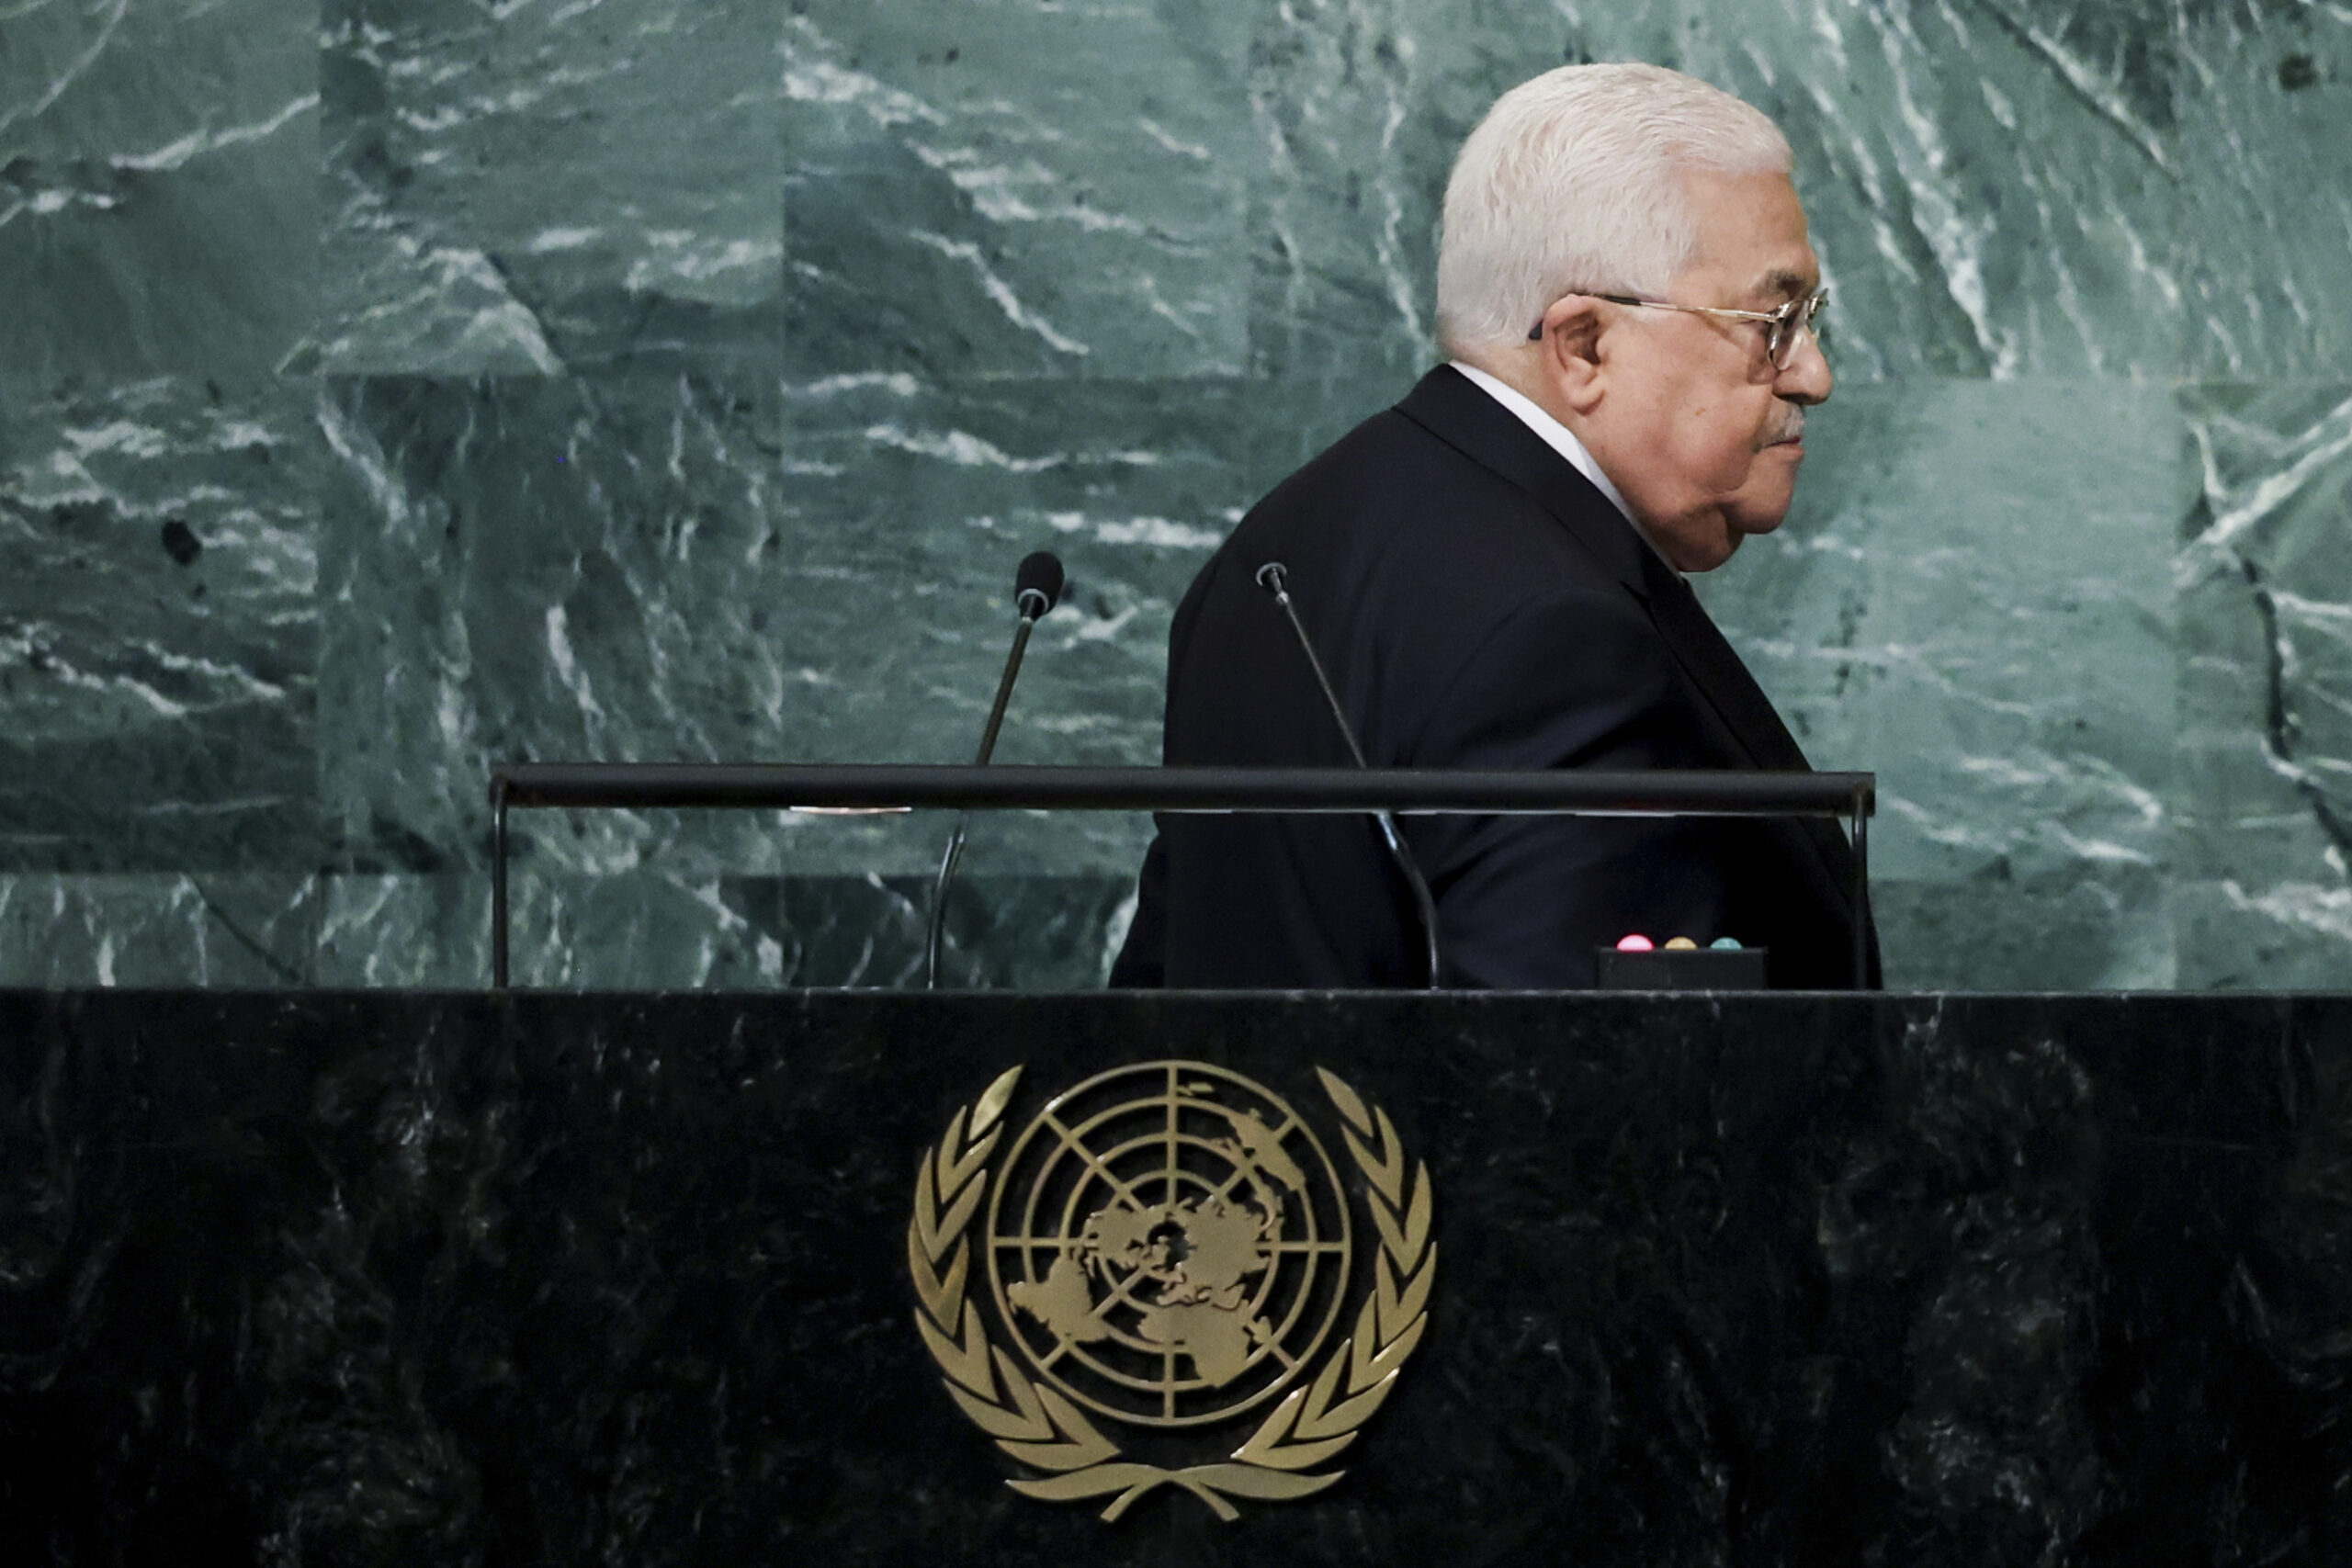 Παλαιστίνη: Ο Μαχμούντ Αμπάς αναστέλλει τις επαφές και τον συντονισμό σε θέματα ασφαλείας με το Ισραήλ